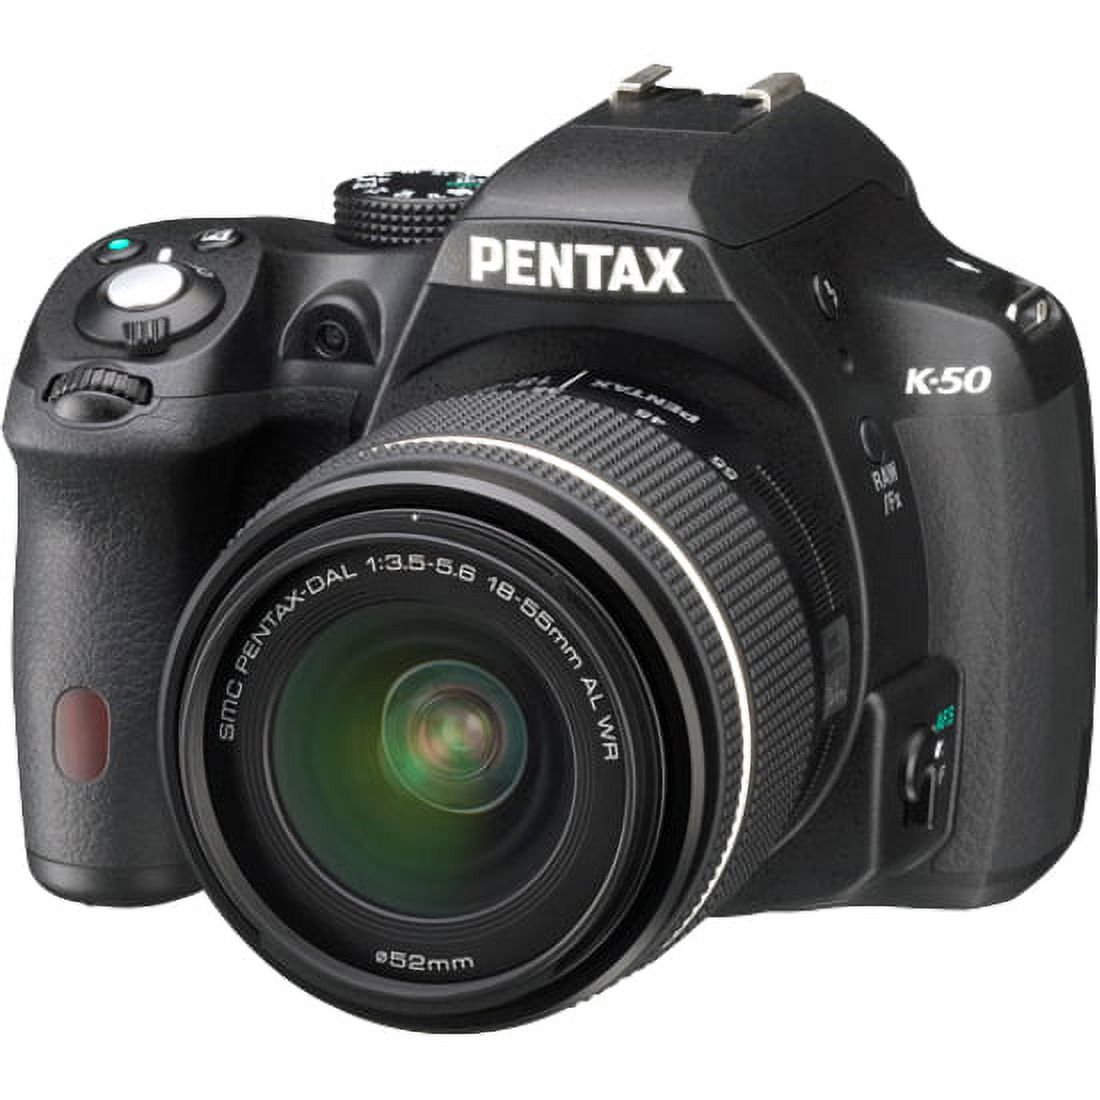 Pentax K-50 16.3 Megapixel Digital SLR Camera with Lens, 0.71", 2.17", Black - image 2 of 5